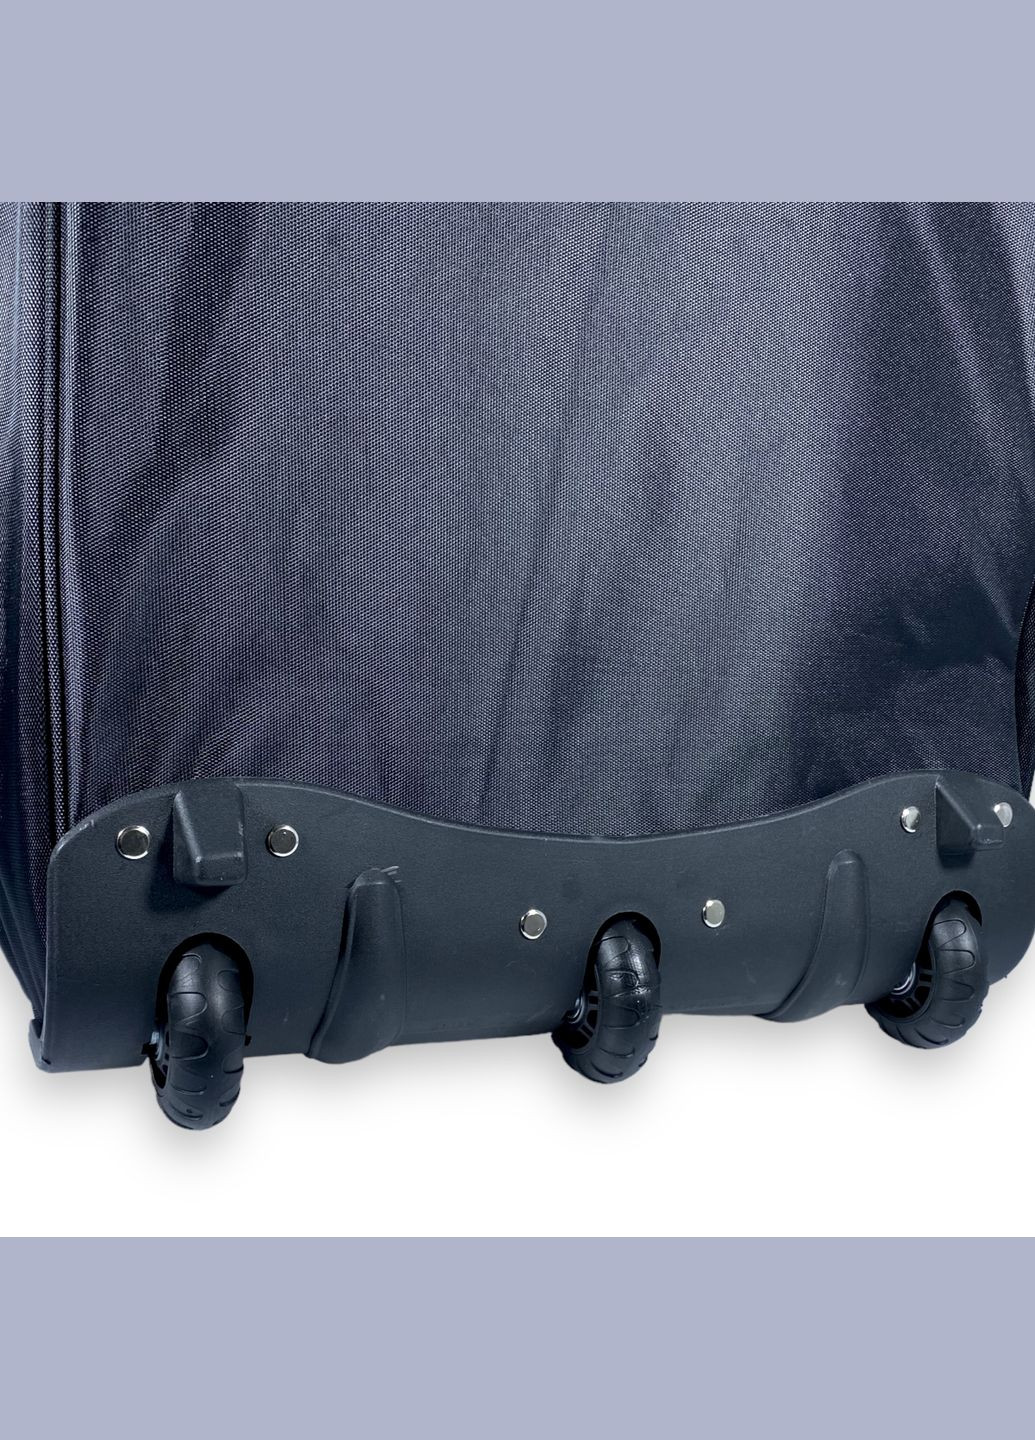 Дорожная сумка на колесах с расширением, 1 отдел, размер: 66*40(52)*38 см, черная Filippini (285814887)